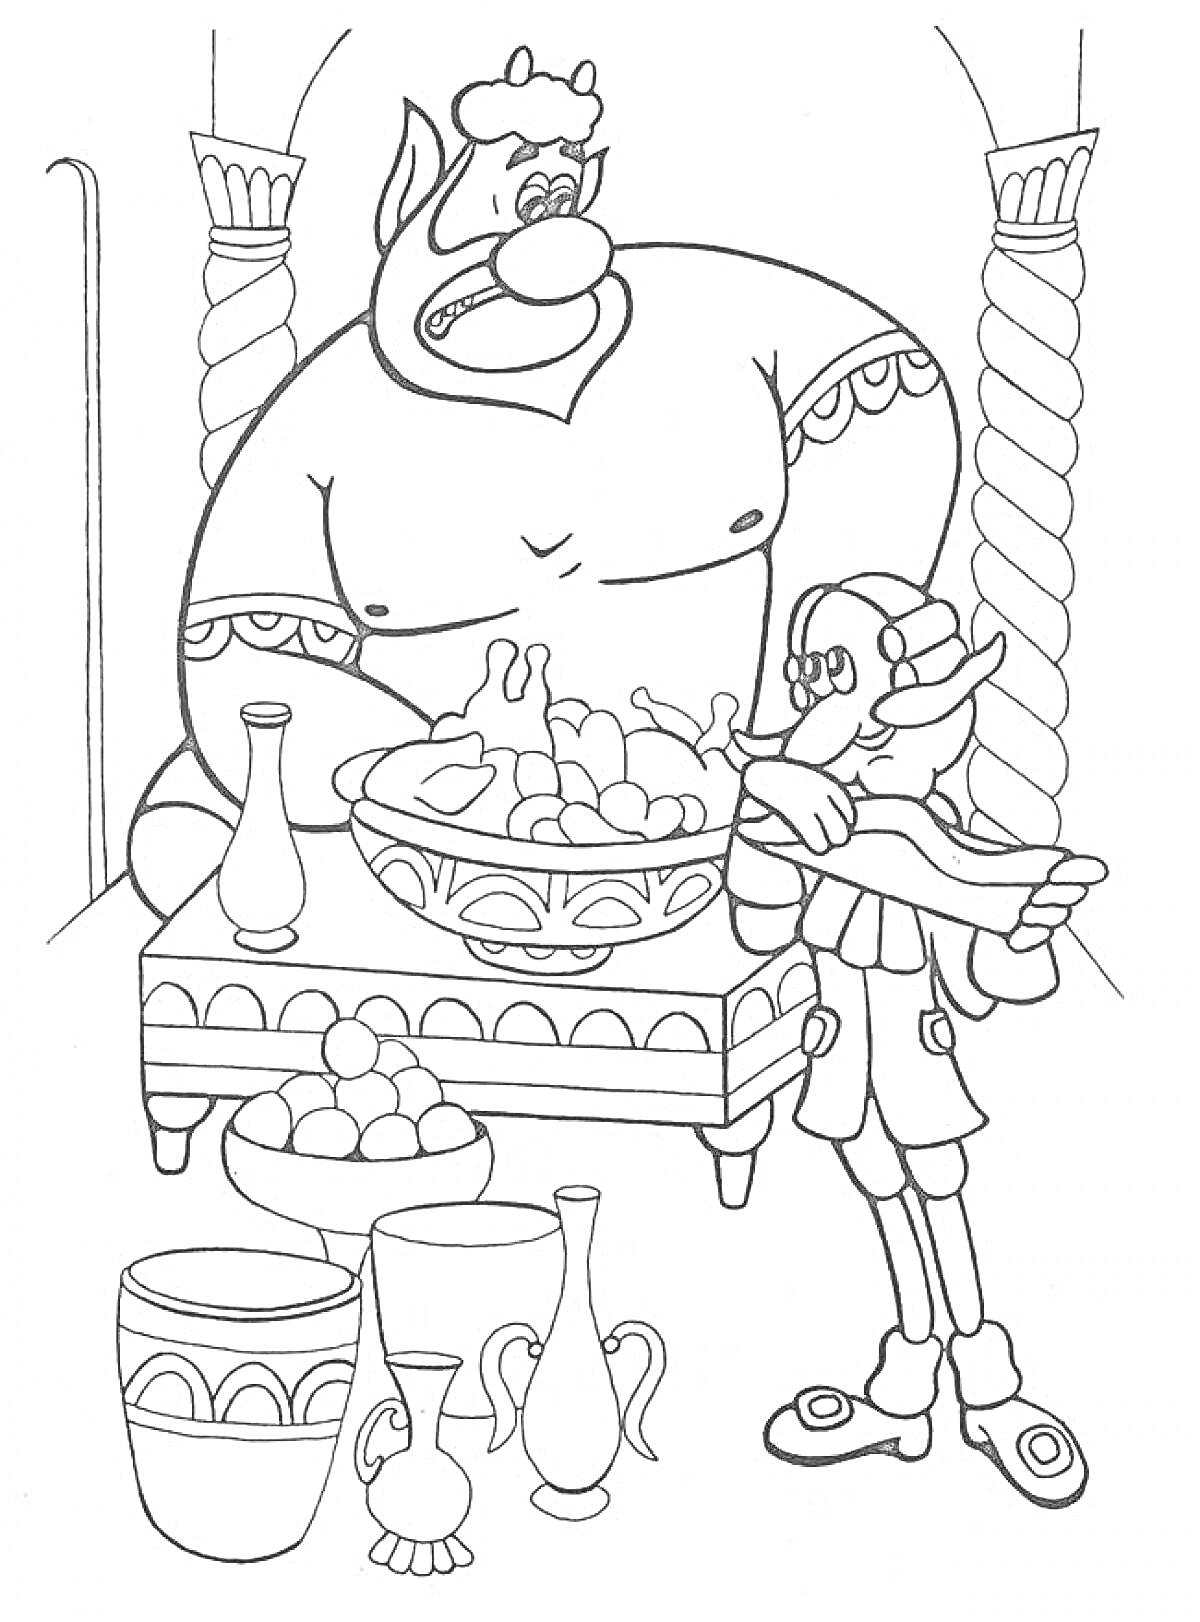 Барон Мюнхгаузен и великан за столом с едой, кувшины и блюда с фруктами